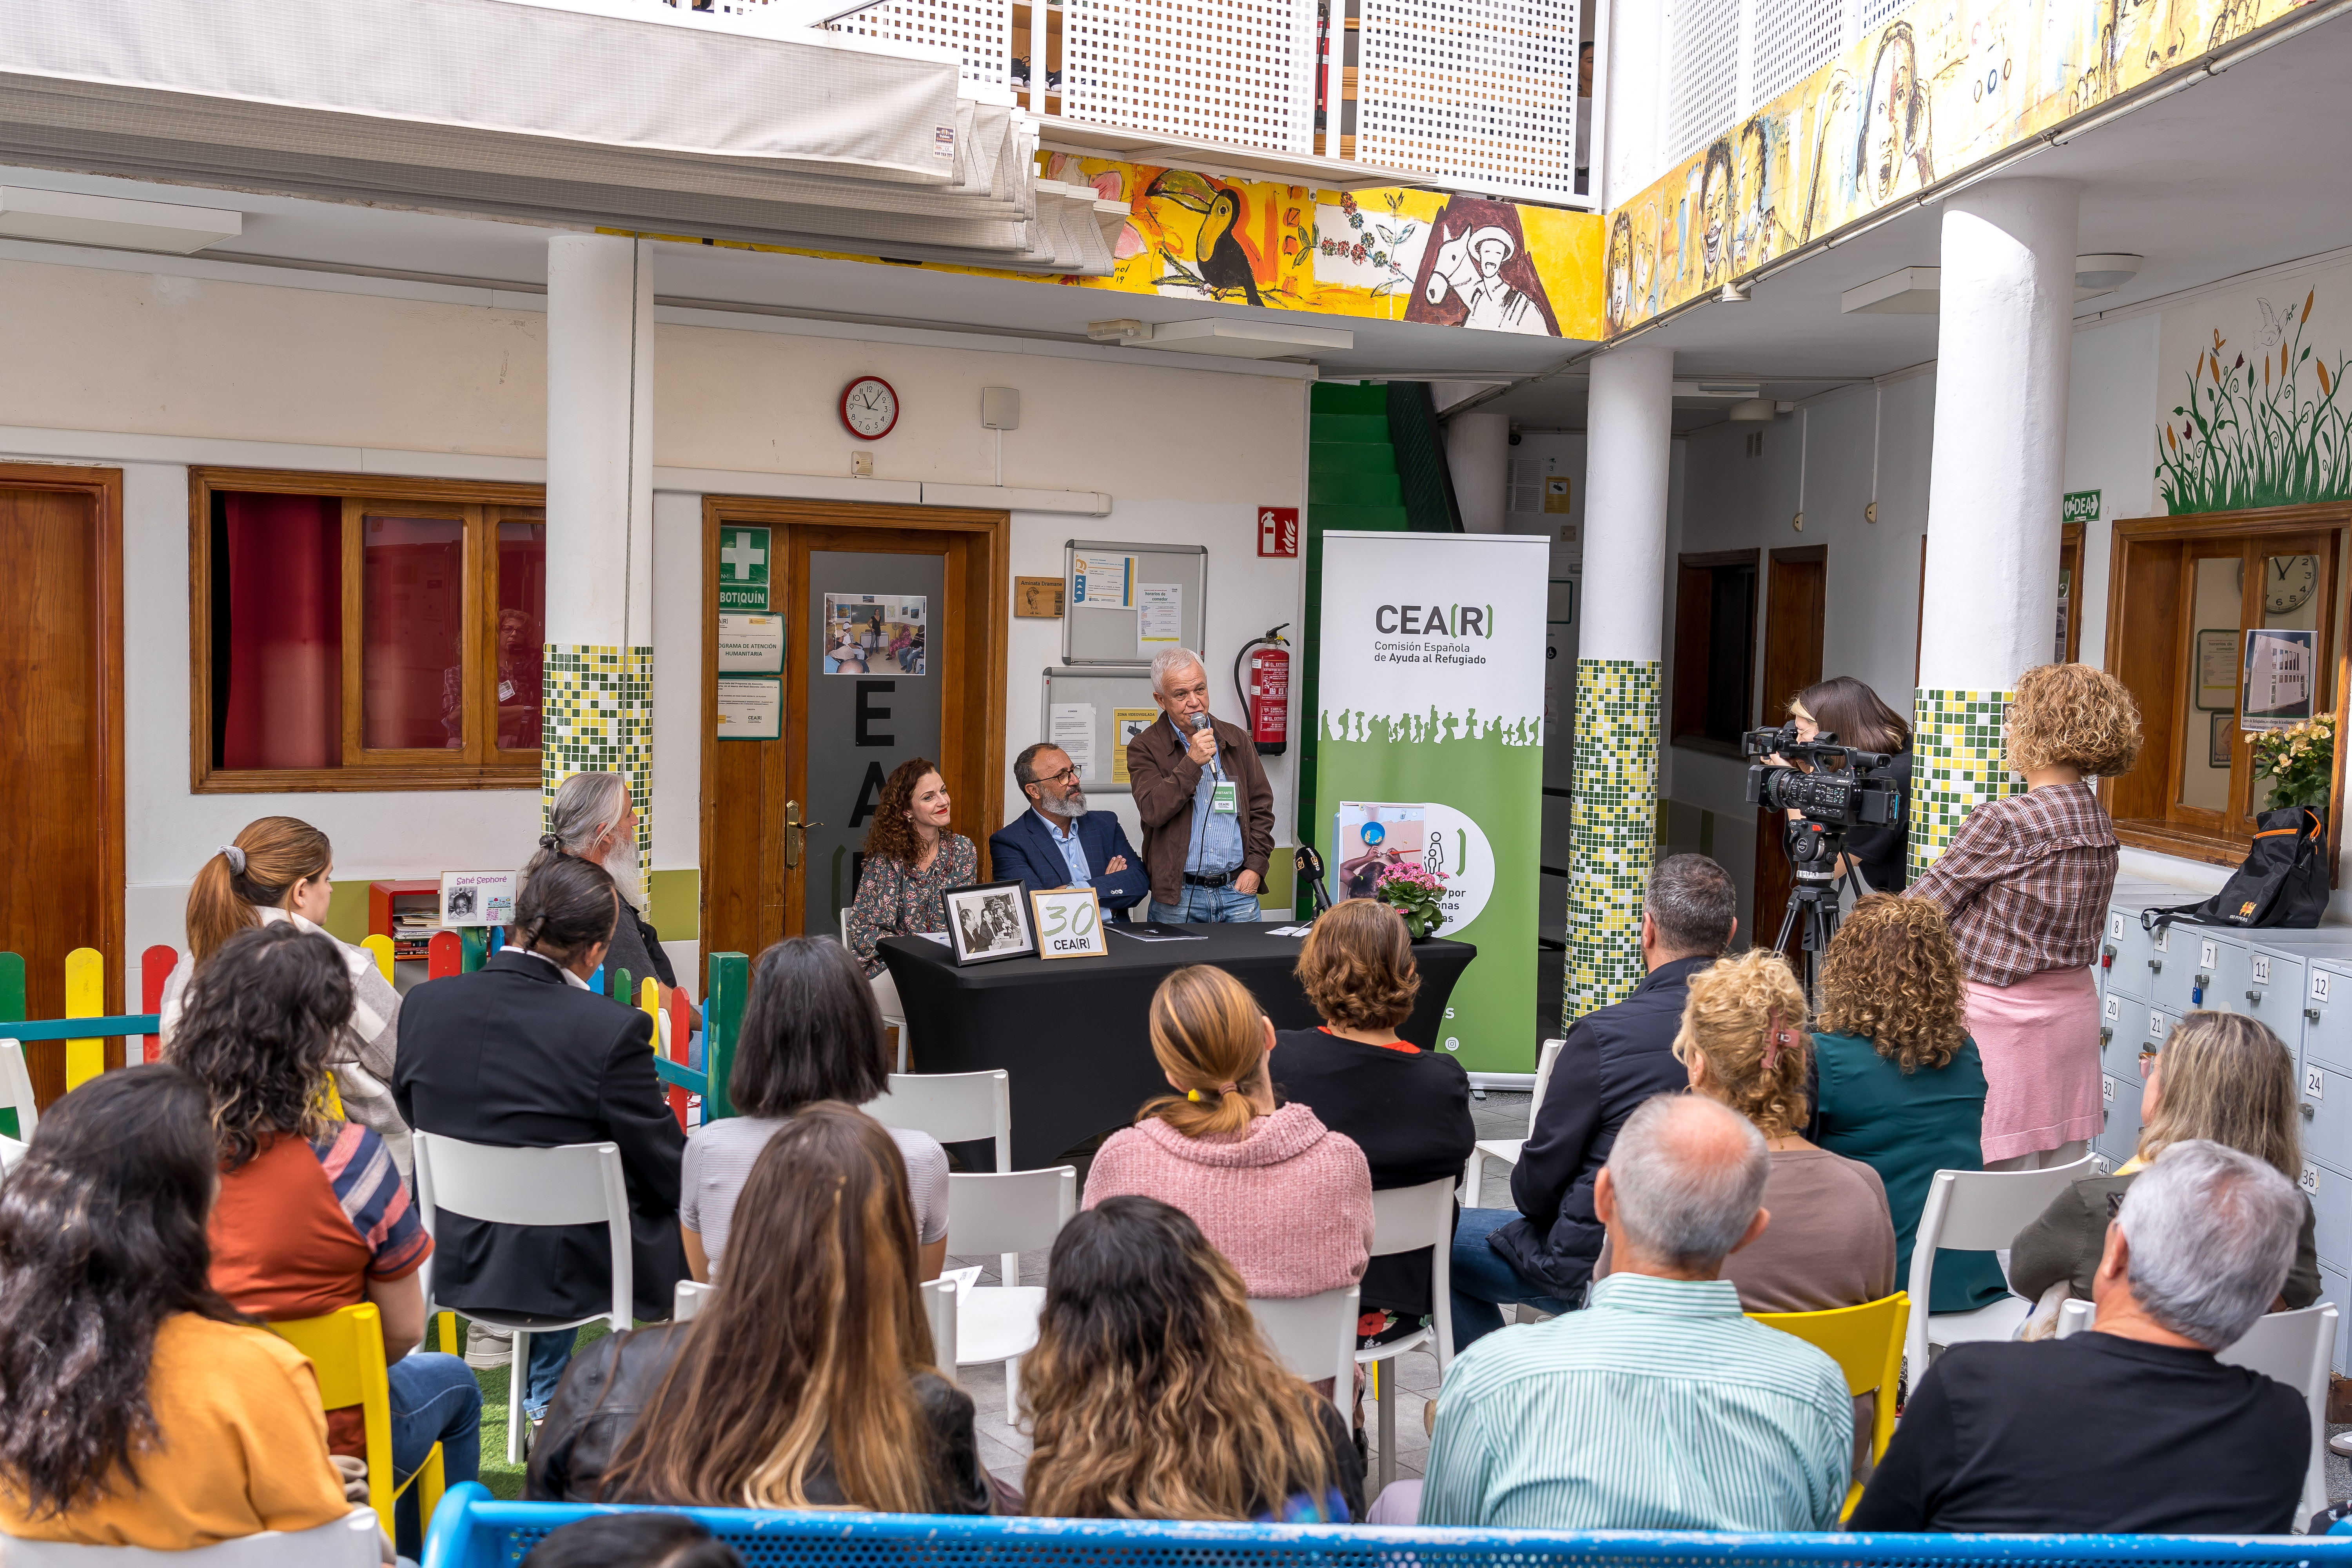  El alcalde felicita a CEAR por “estos 30 años promoviendo la solidaridad e interculturalidad en el municipio”